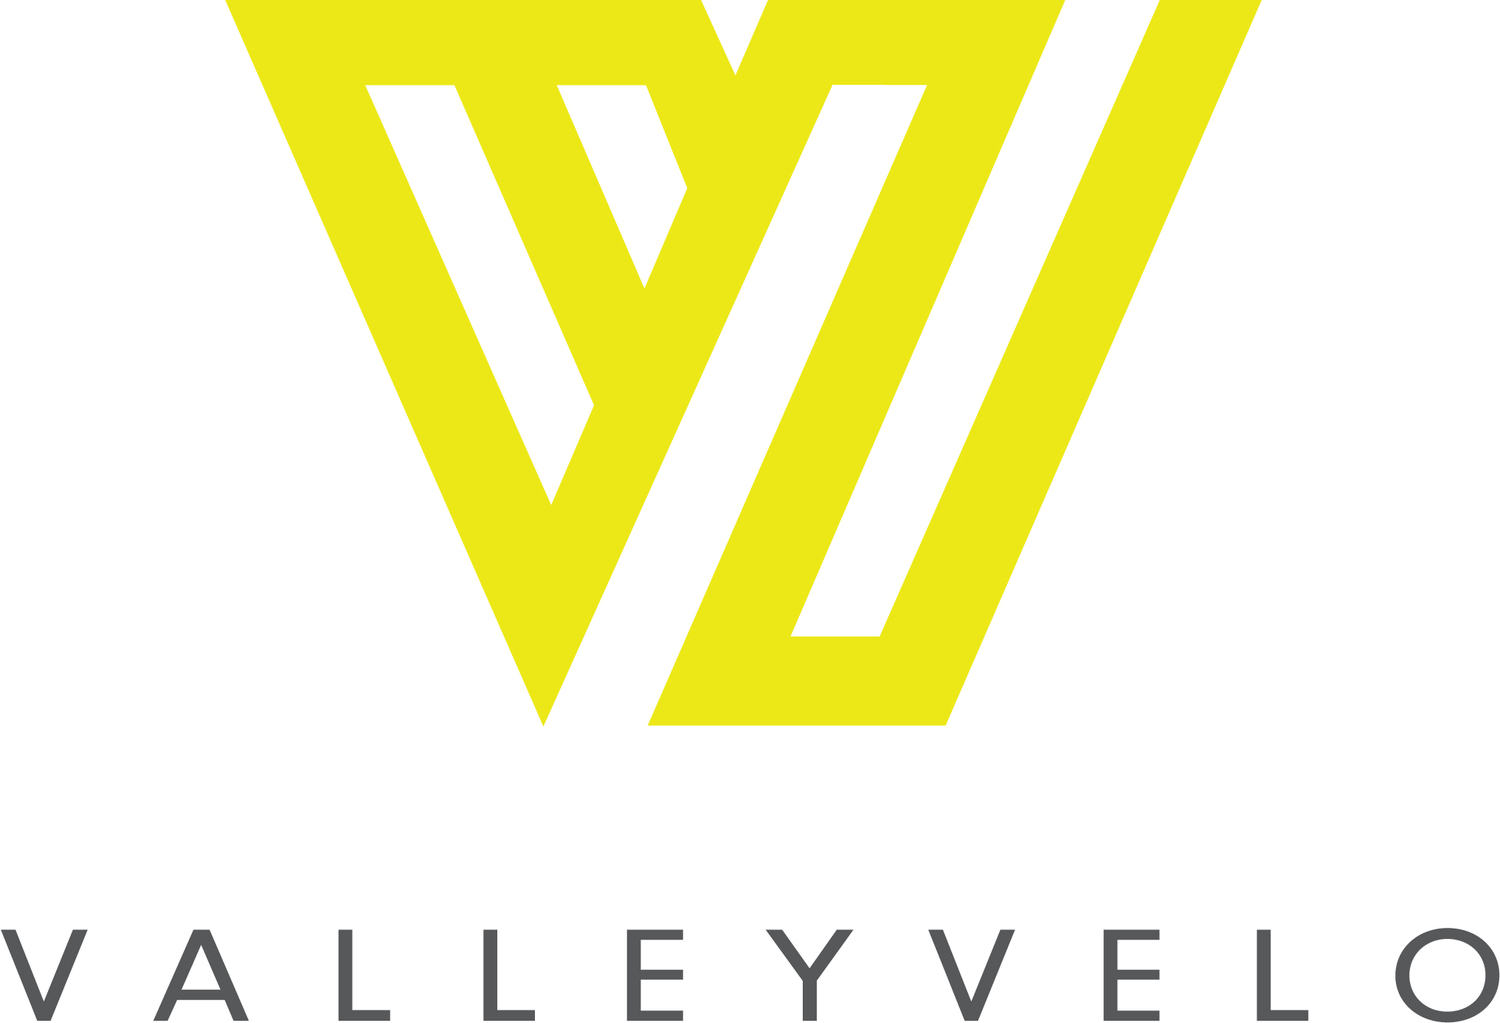 V2 - Valley Velo